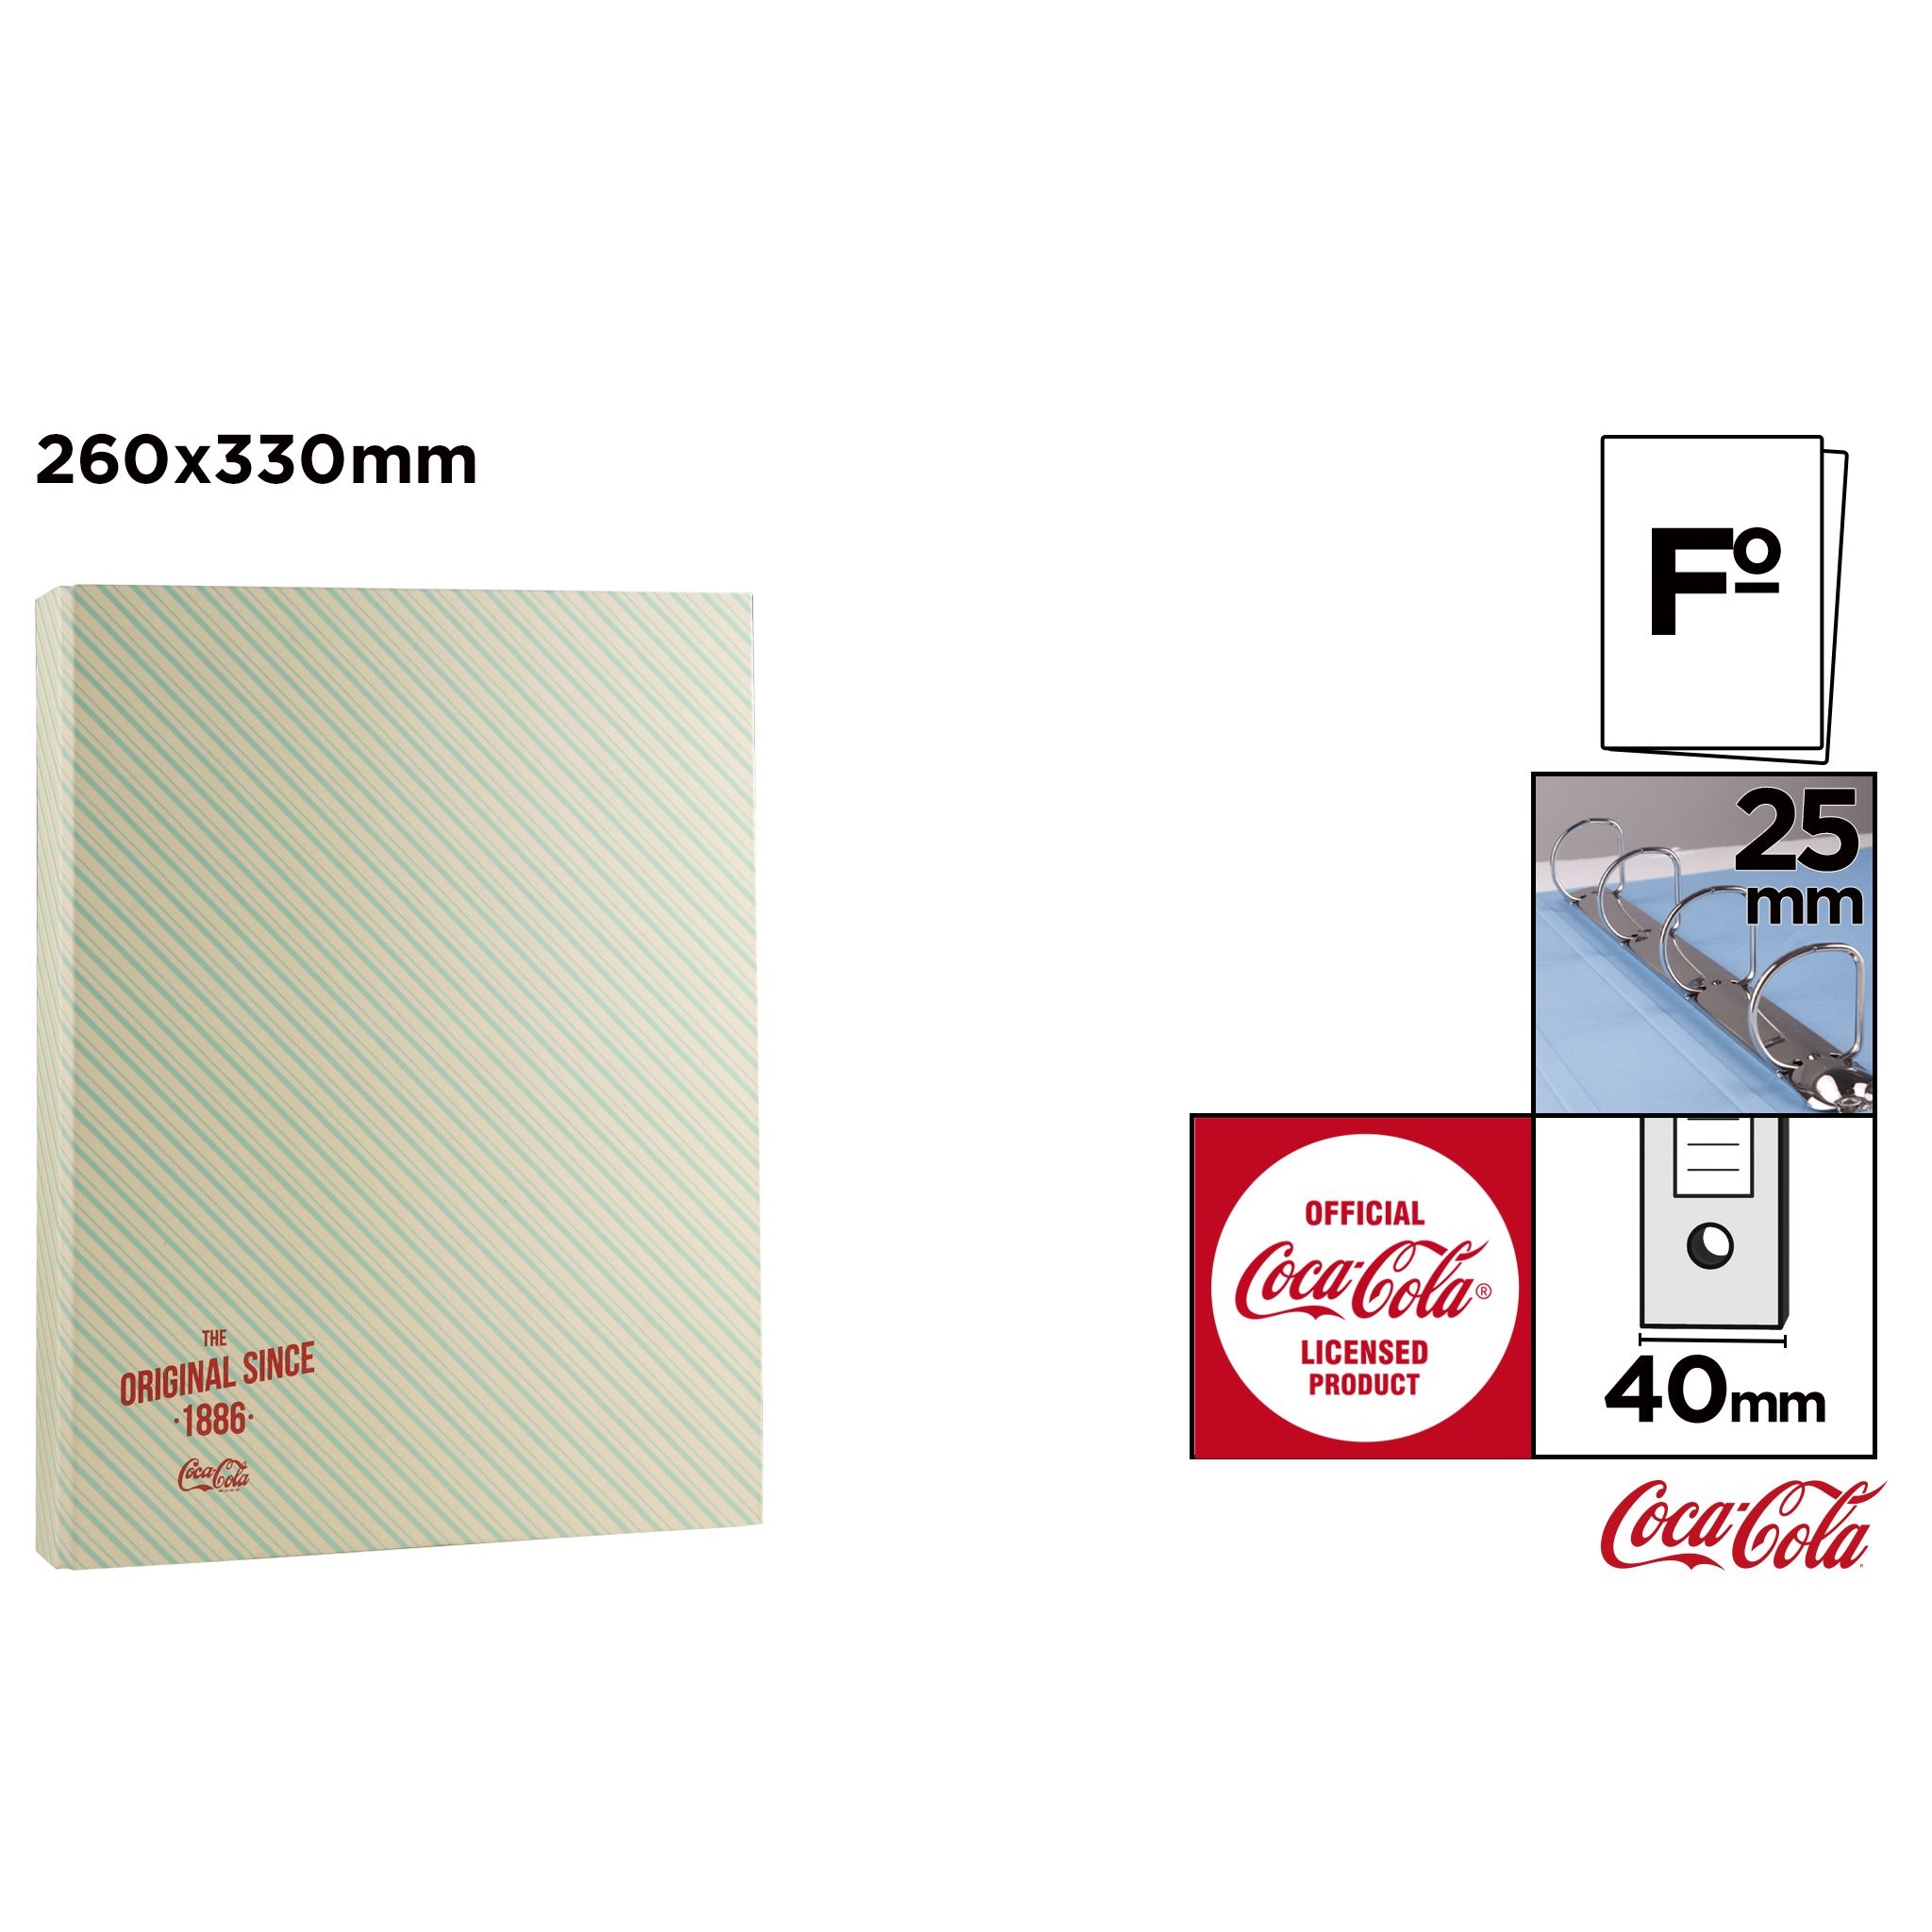 CC010 Coca-Cola Folder File Box Organitzador de dades